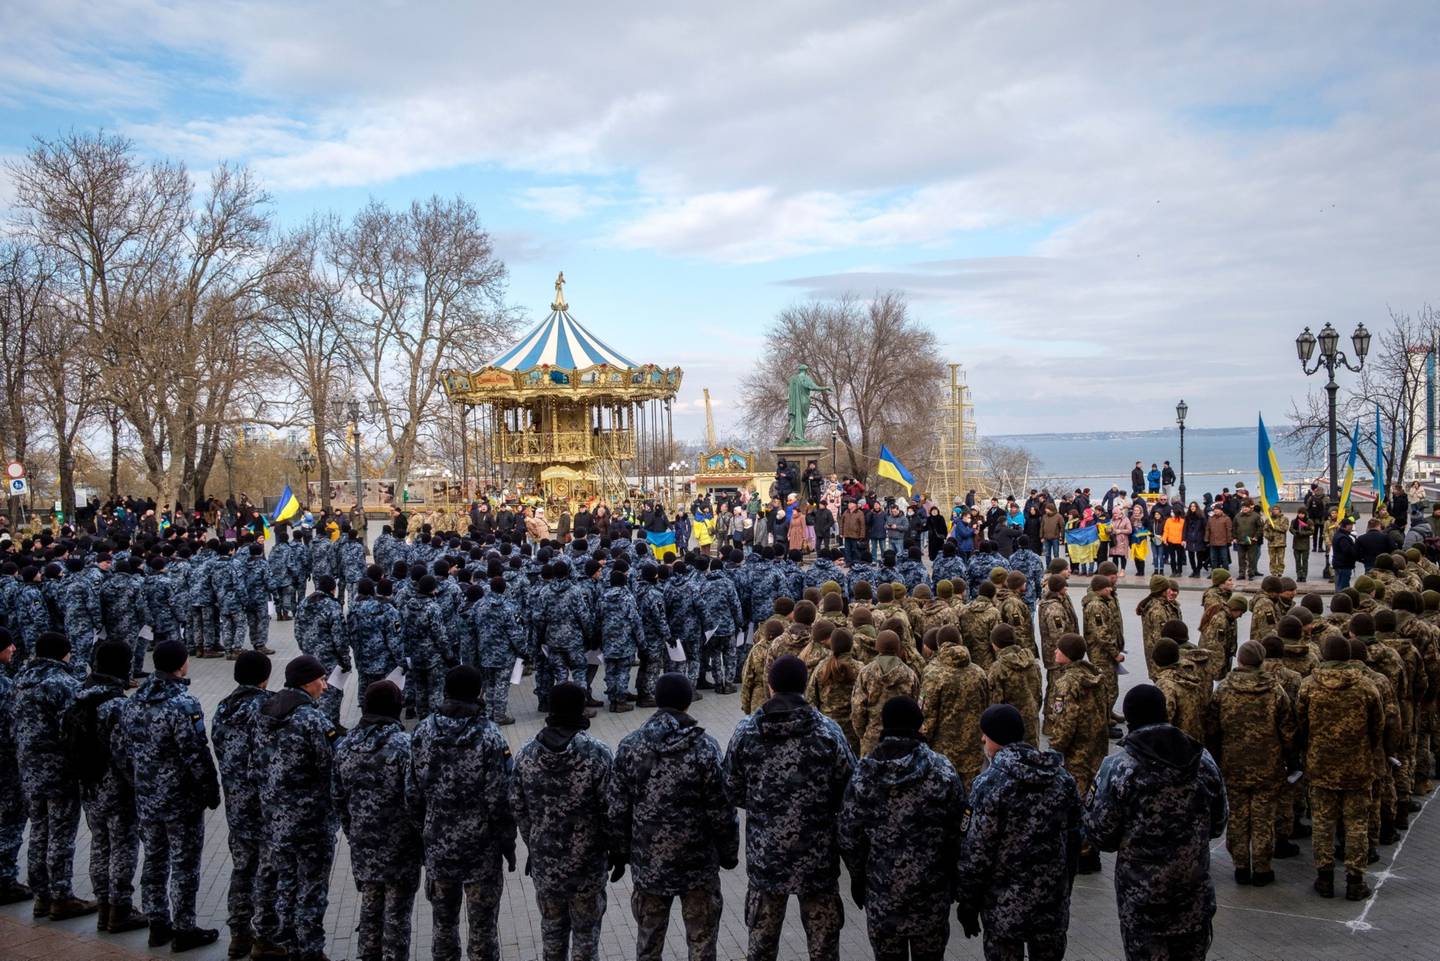 Agentes de policía y soldados ucranianos asisten a un mitin en Odessa. La ciudad portuaria, situada en la orilla noroeste del Mar Negro, tiene más de un millón de habitantes y está a un corto salto por mar de Crimea.